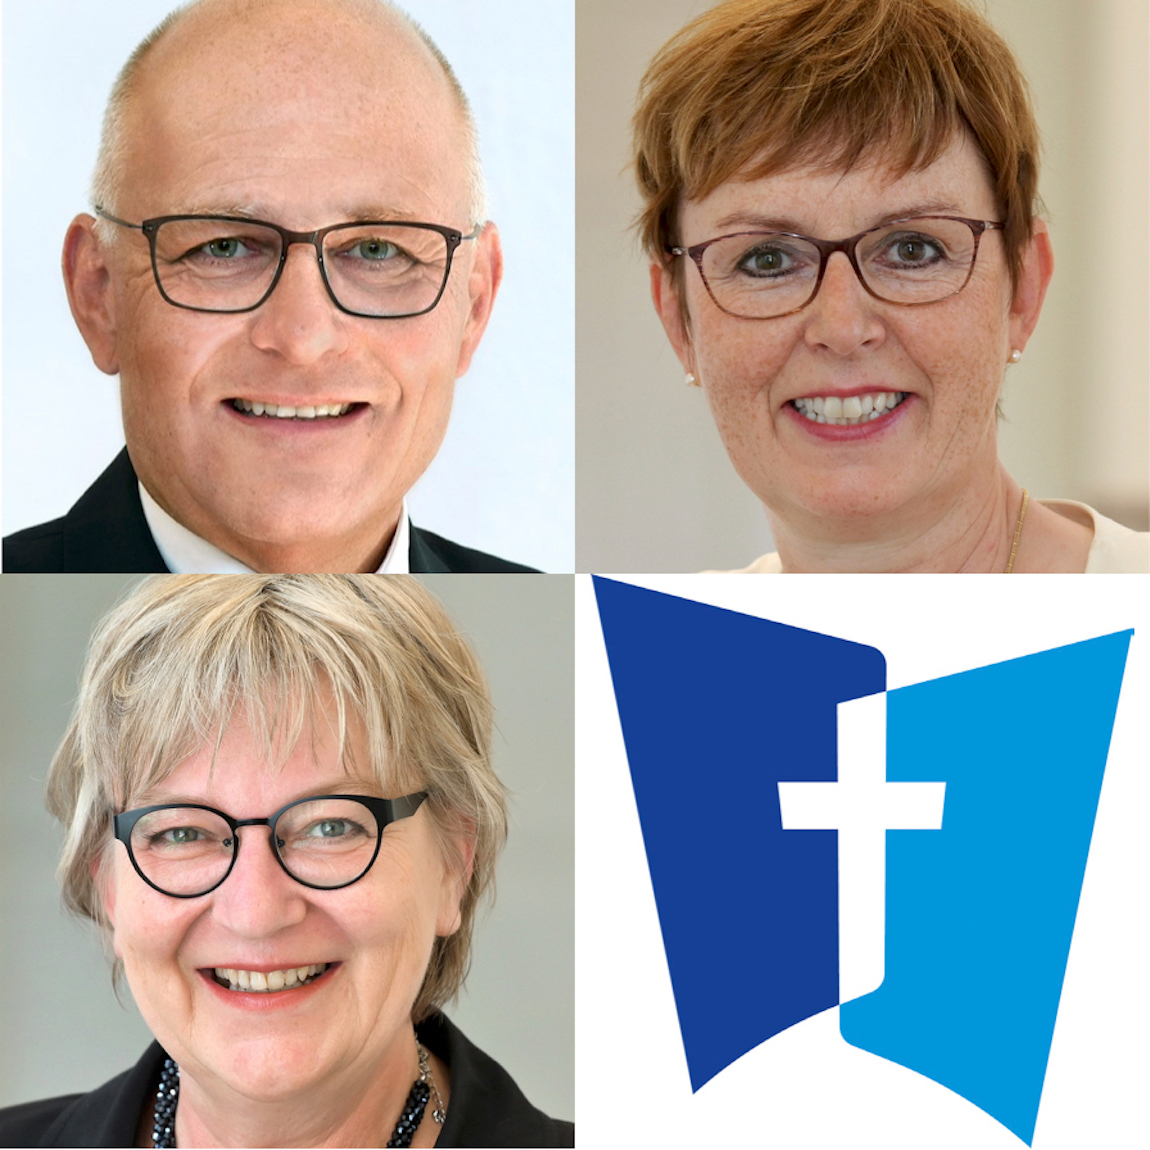 Bewerben sich um die Nachfolge des pfälzischen Kirchenpräsidenten (v.l.n.r.): Albrecht Bähr, Marianne Wagner, Dorothee Wüst. Fotos: lk/DWP/Landry.